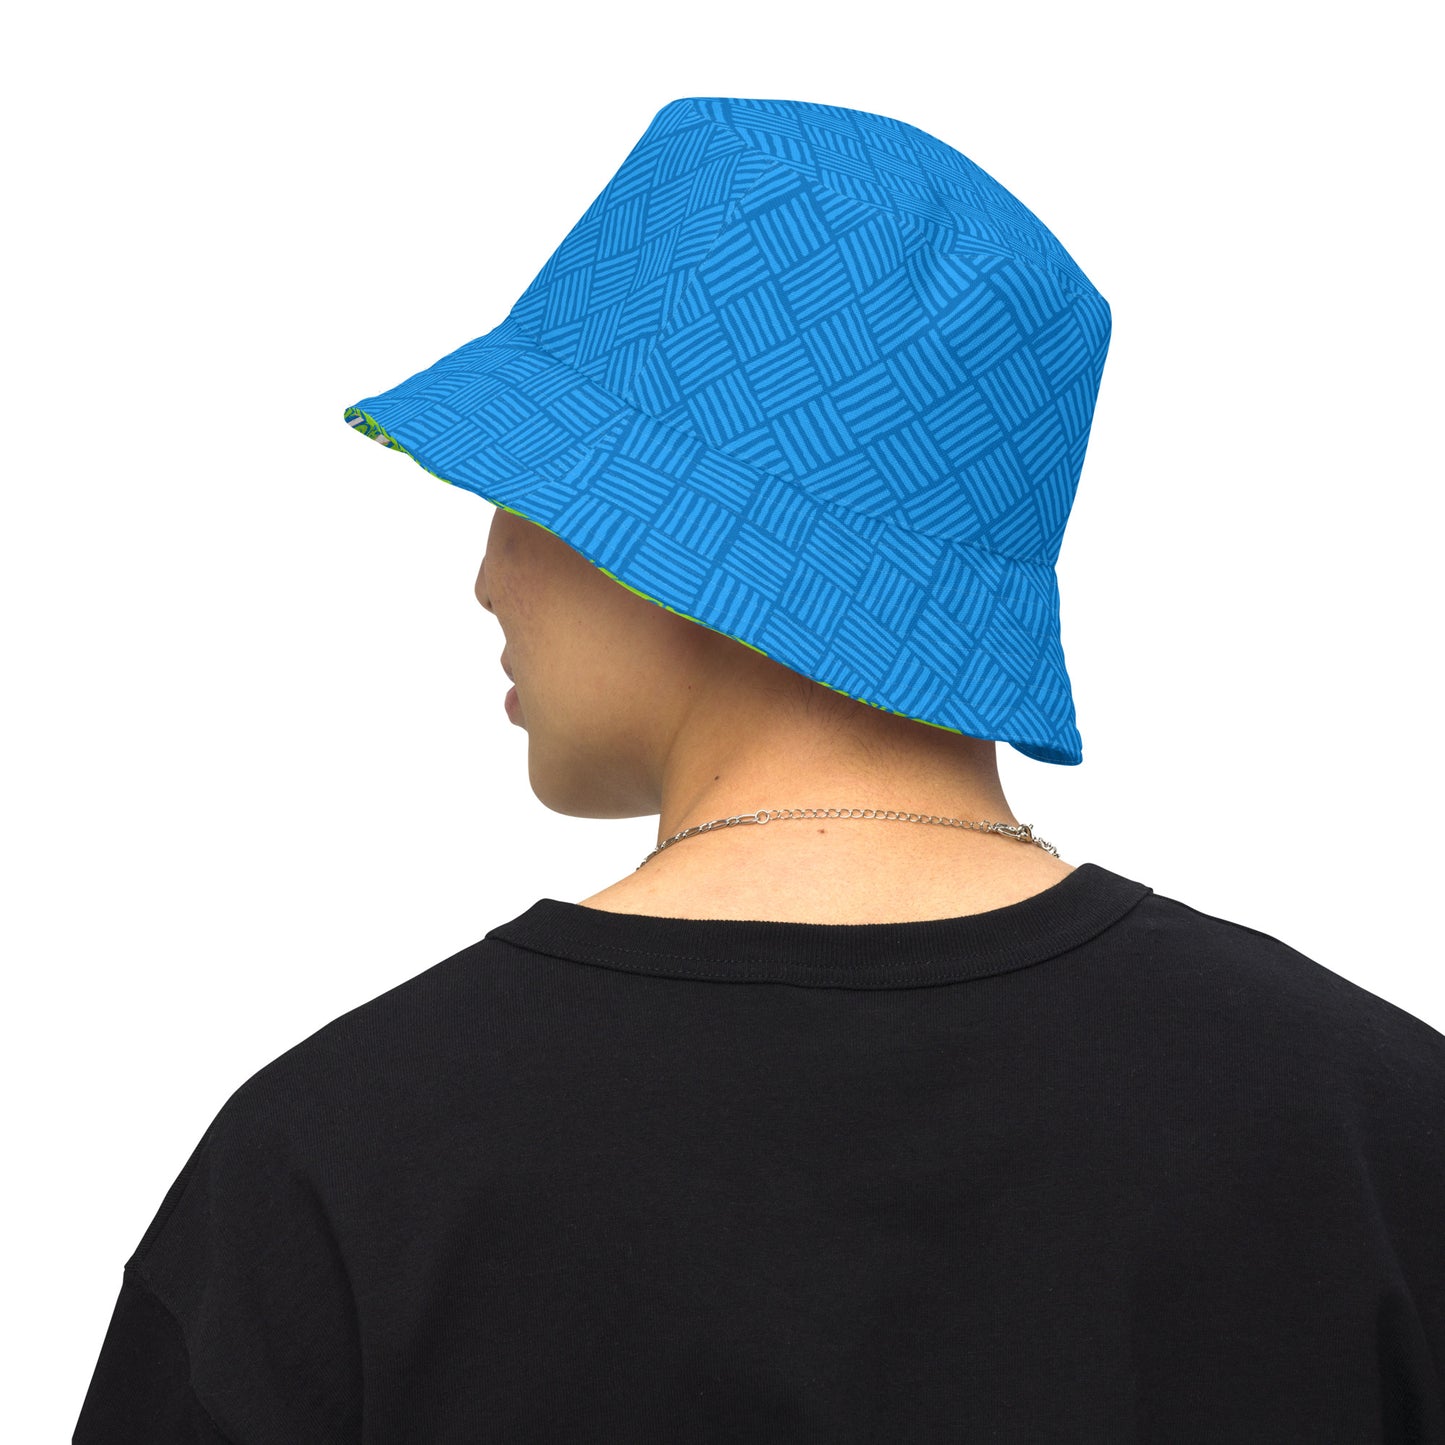 Honolulu Blue Weave Reversible bucket hat